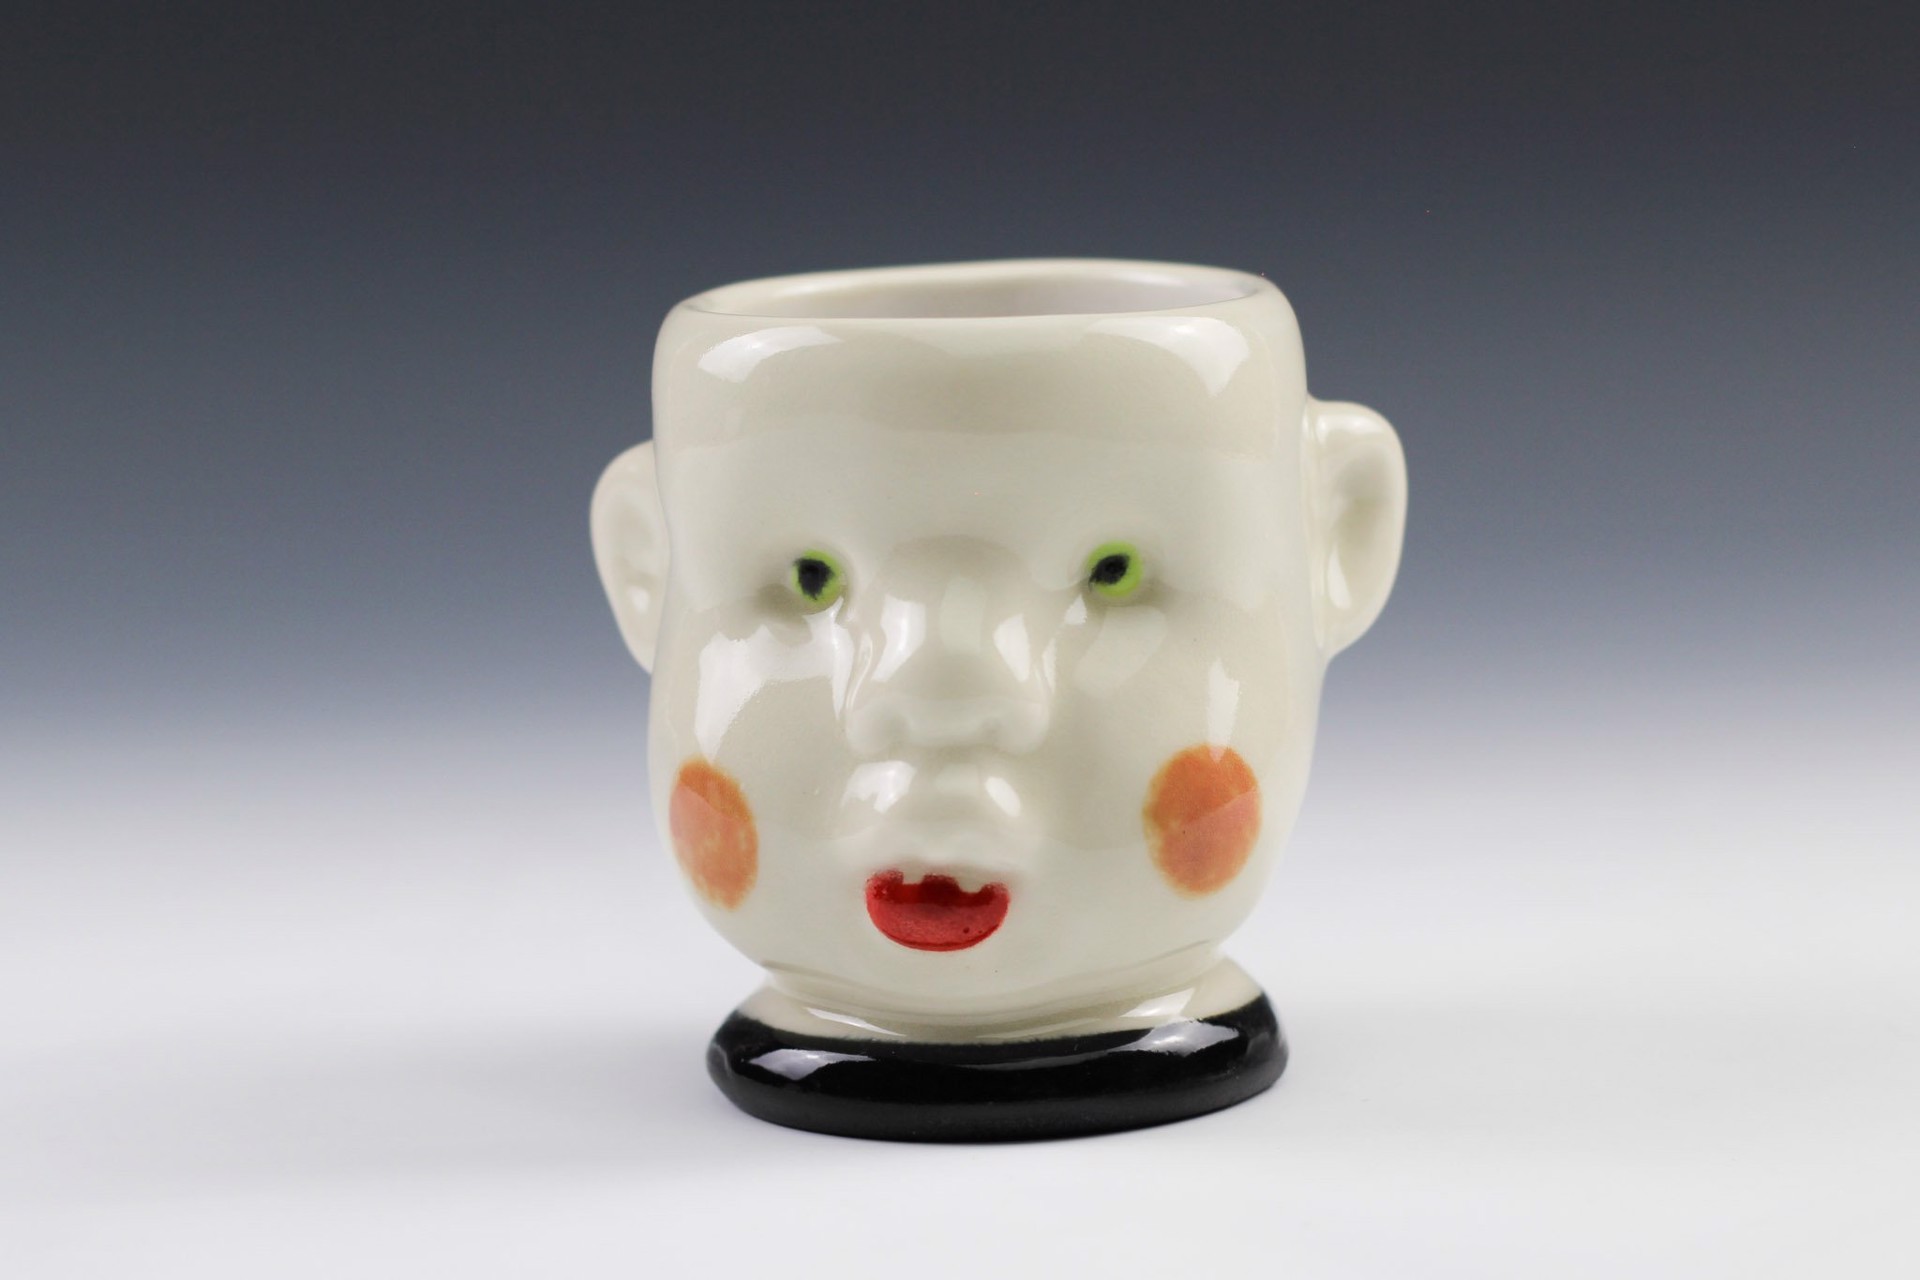 Doll Head Cup by Tom Bartel